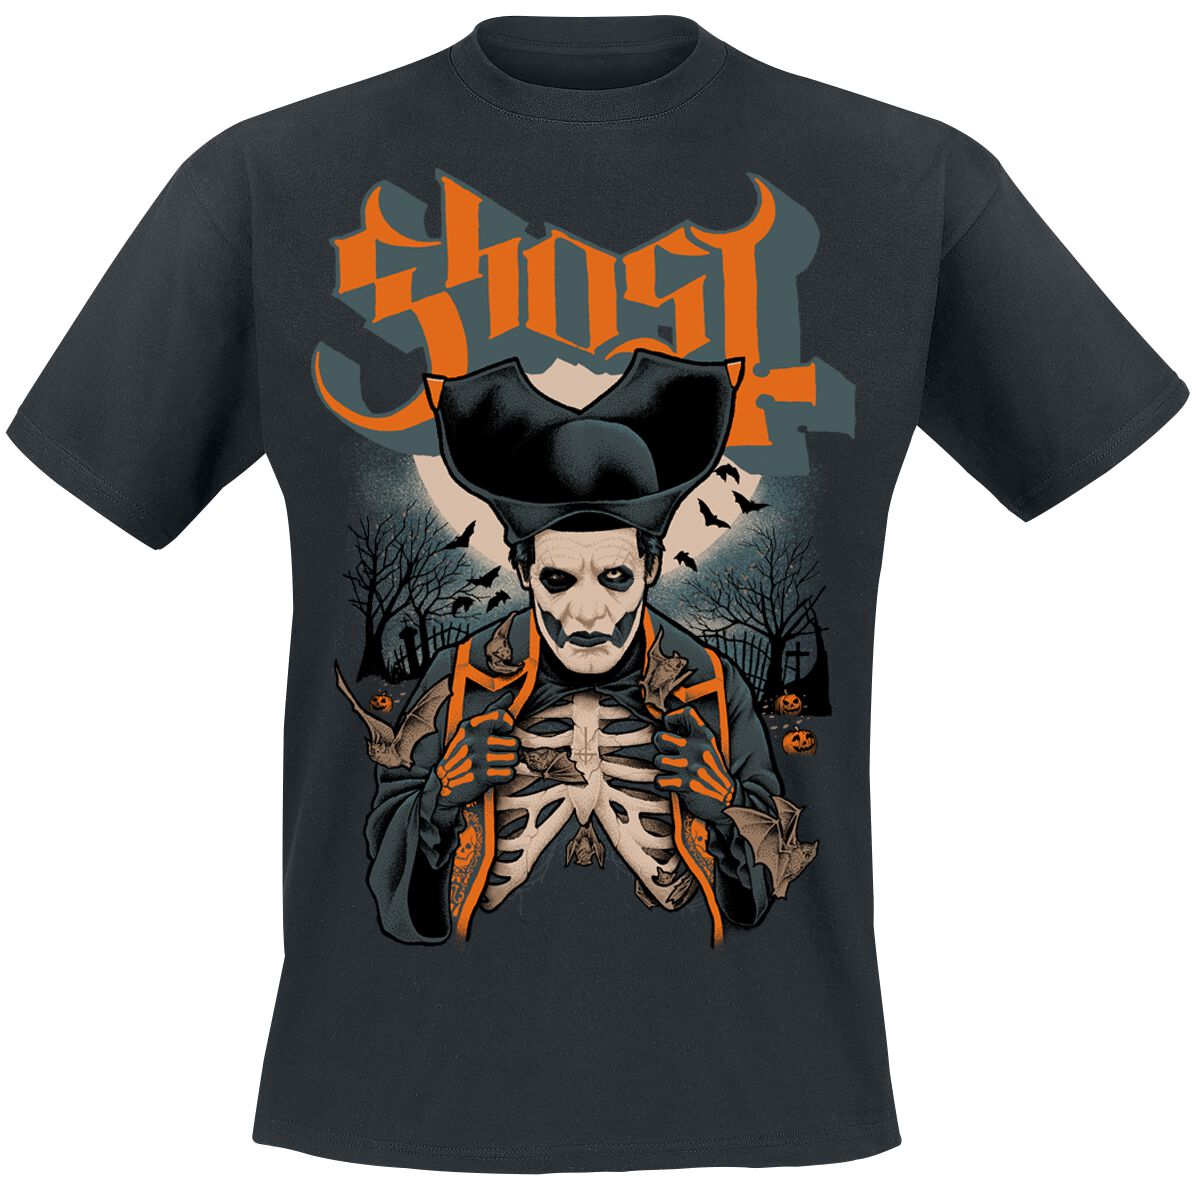 Ghost T-Shirt - Ribs & Bats - S bis 4XL - für Männer - Größe XL - schwarz  - Lizenziertes Merchandise!